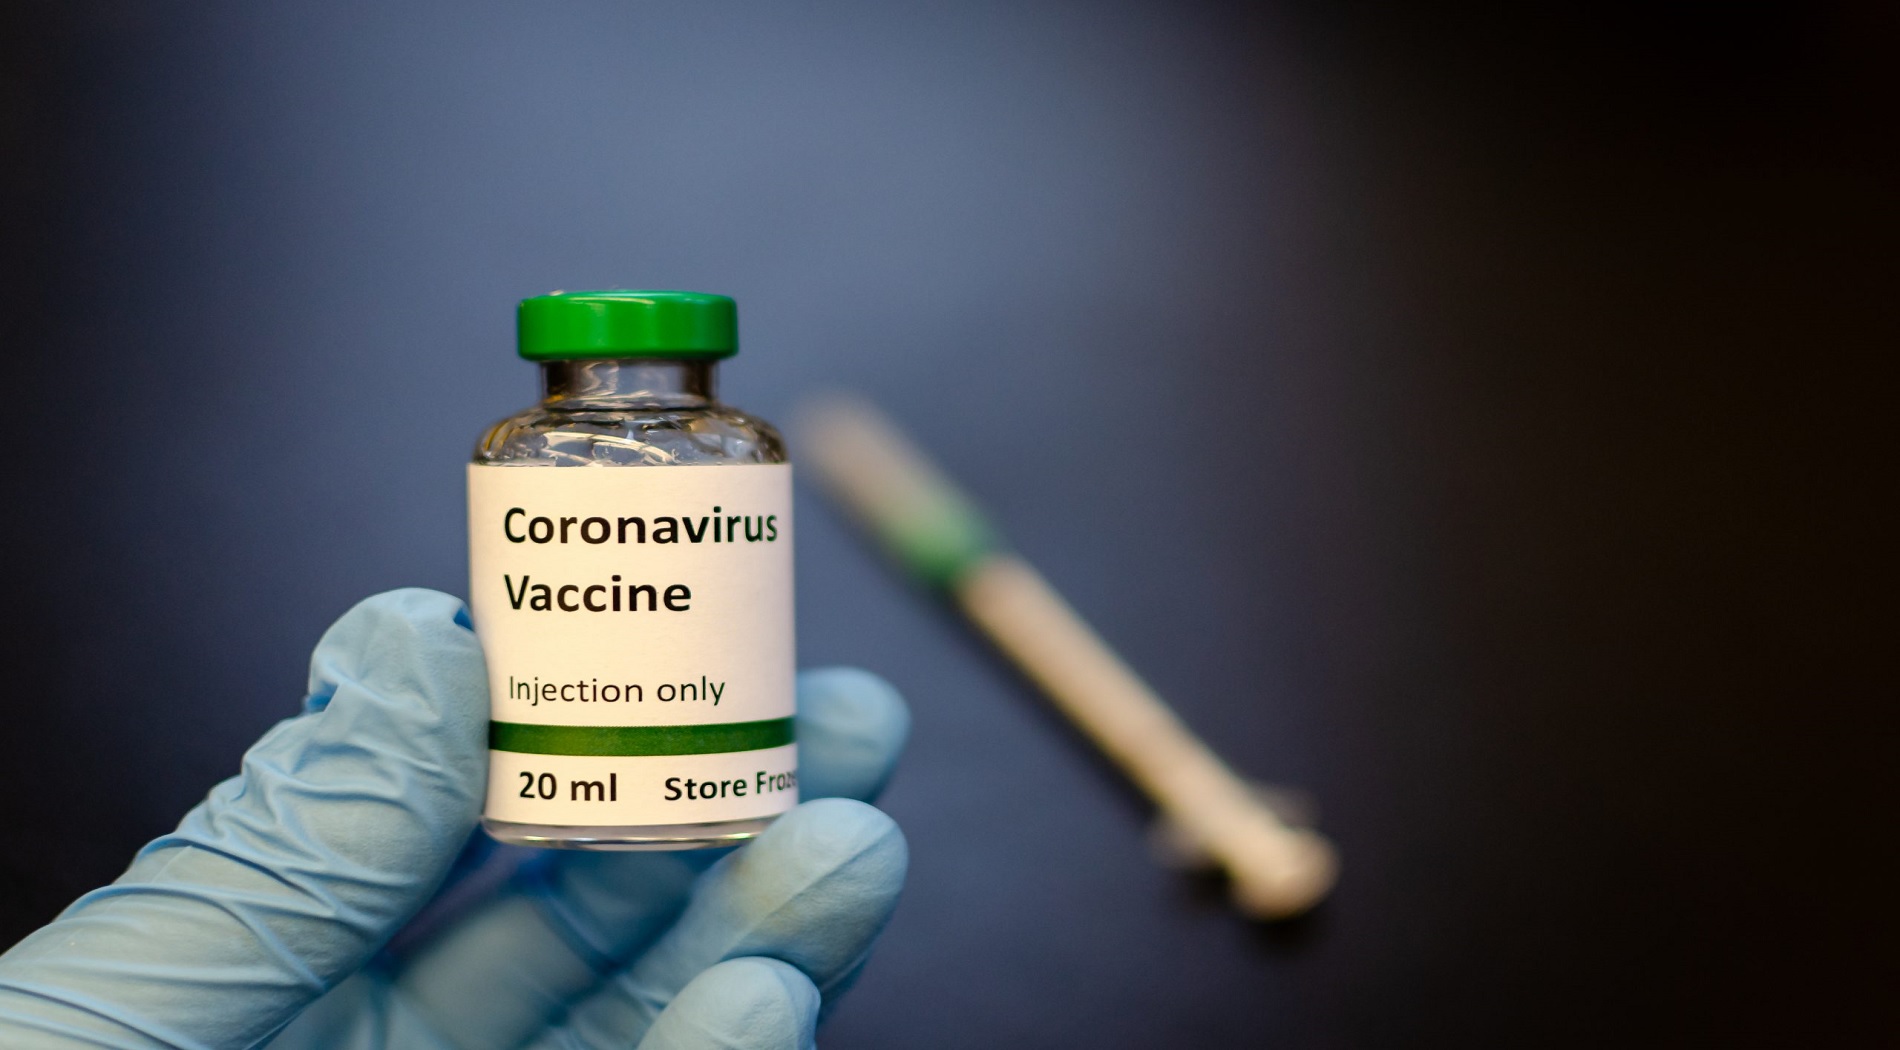 Οι ειδικοί σταθμίζουν τις προοπτικές ενός εμβολίου κατά του κοροναϊού